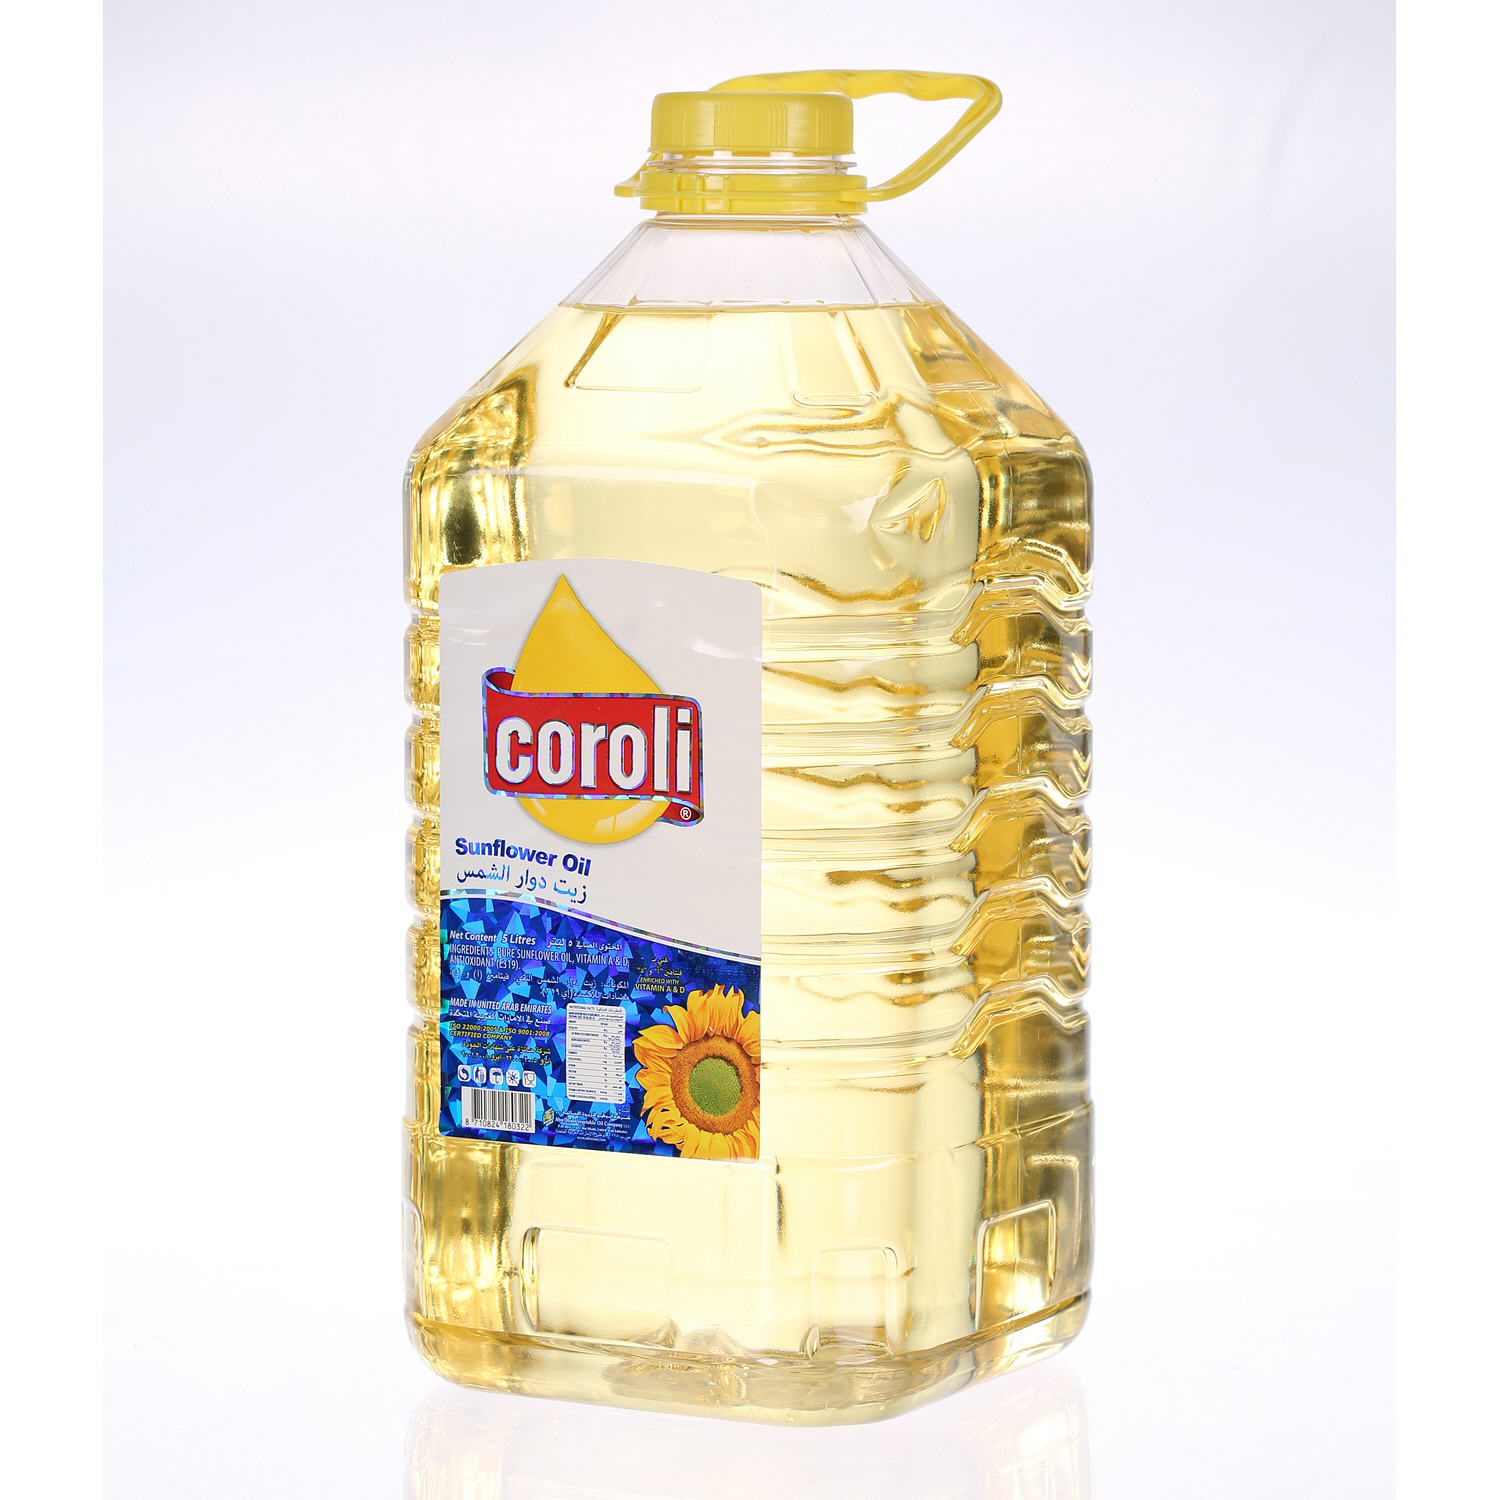 Coroli Sunflower Oil Plastic Bottle Can 5Ltr